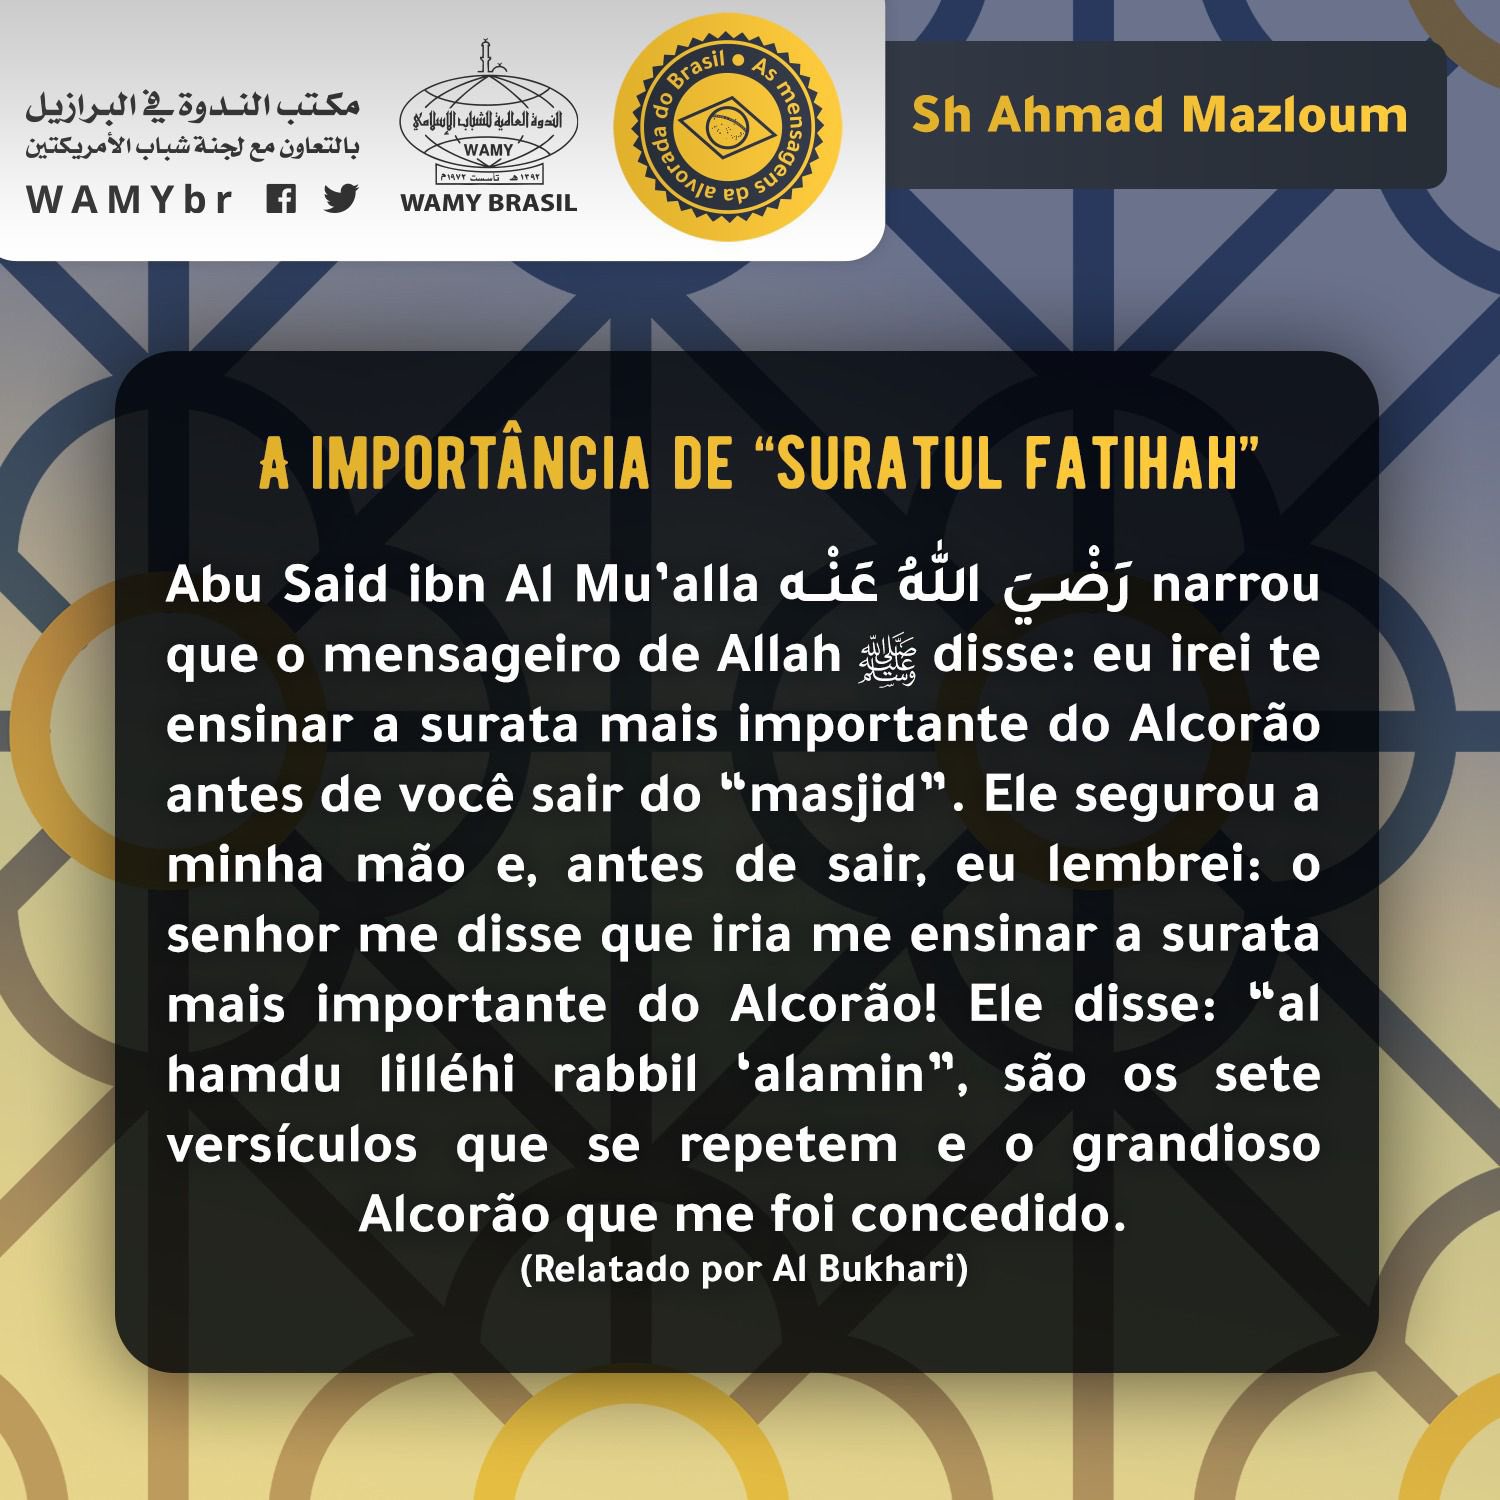 A importância de “suratul fatihah”